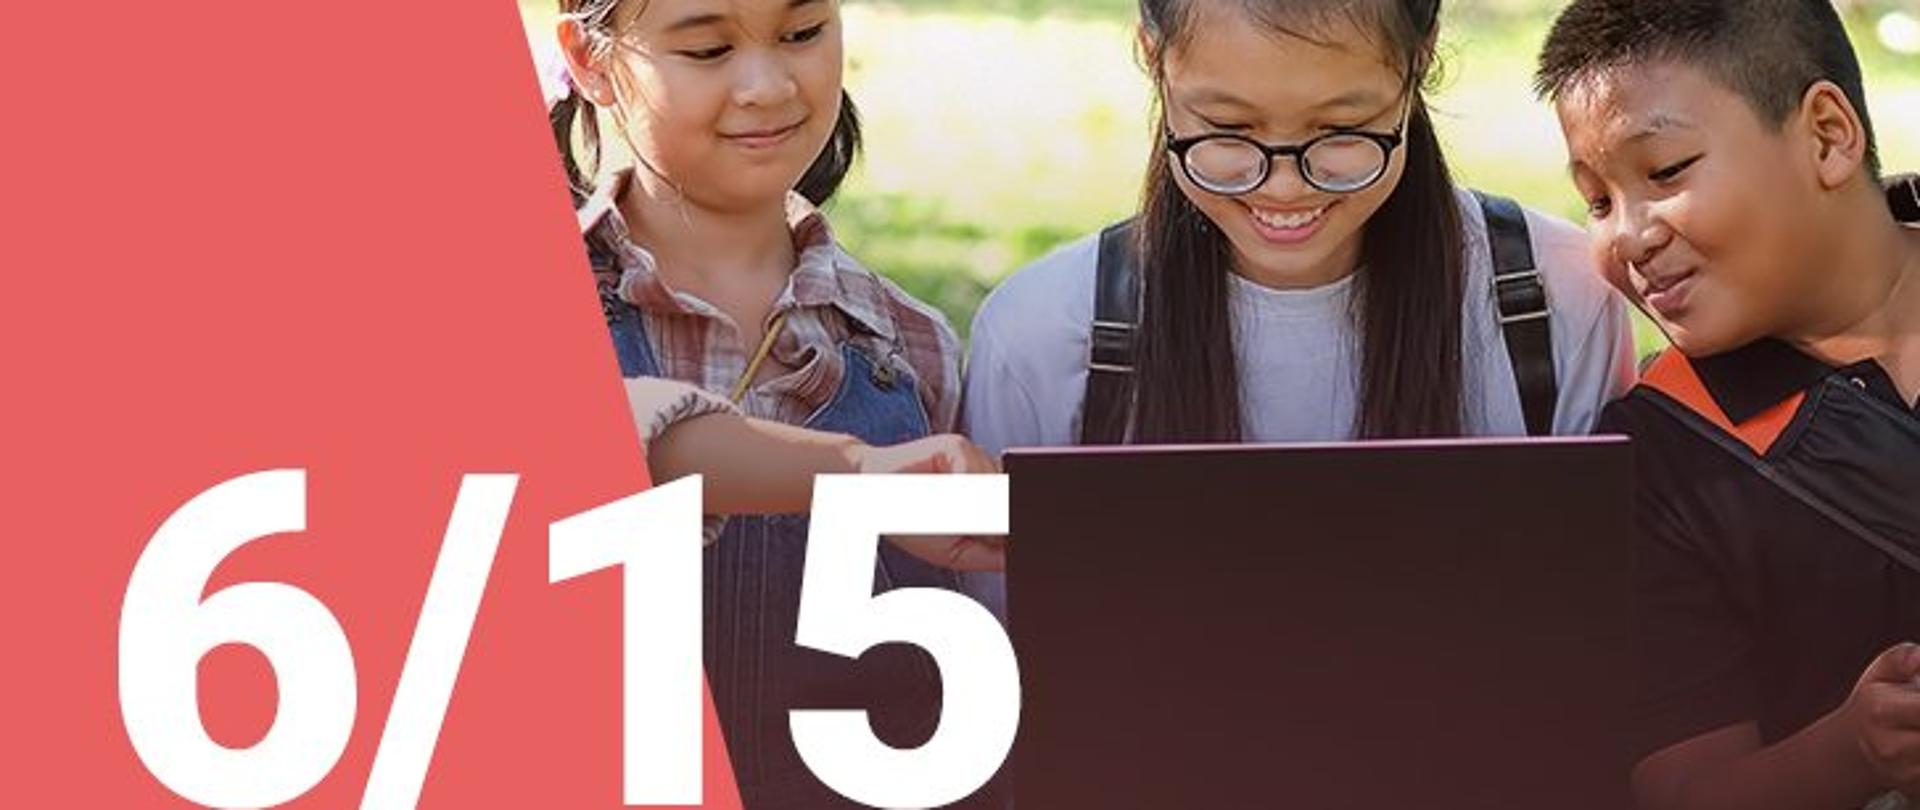 Na zdjęciu widzimy dwie dziewczynki oraz chłopca patrzących z uśmiechem na ekran laptopa. W dolnym lewym roku widoczna jest numeracja zdjęcia (6/15) 